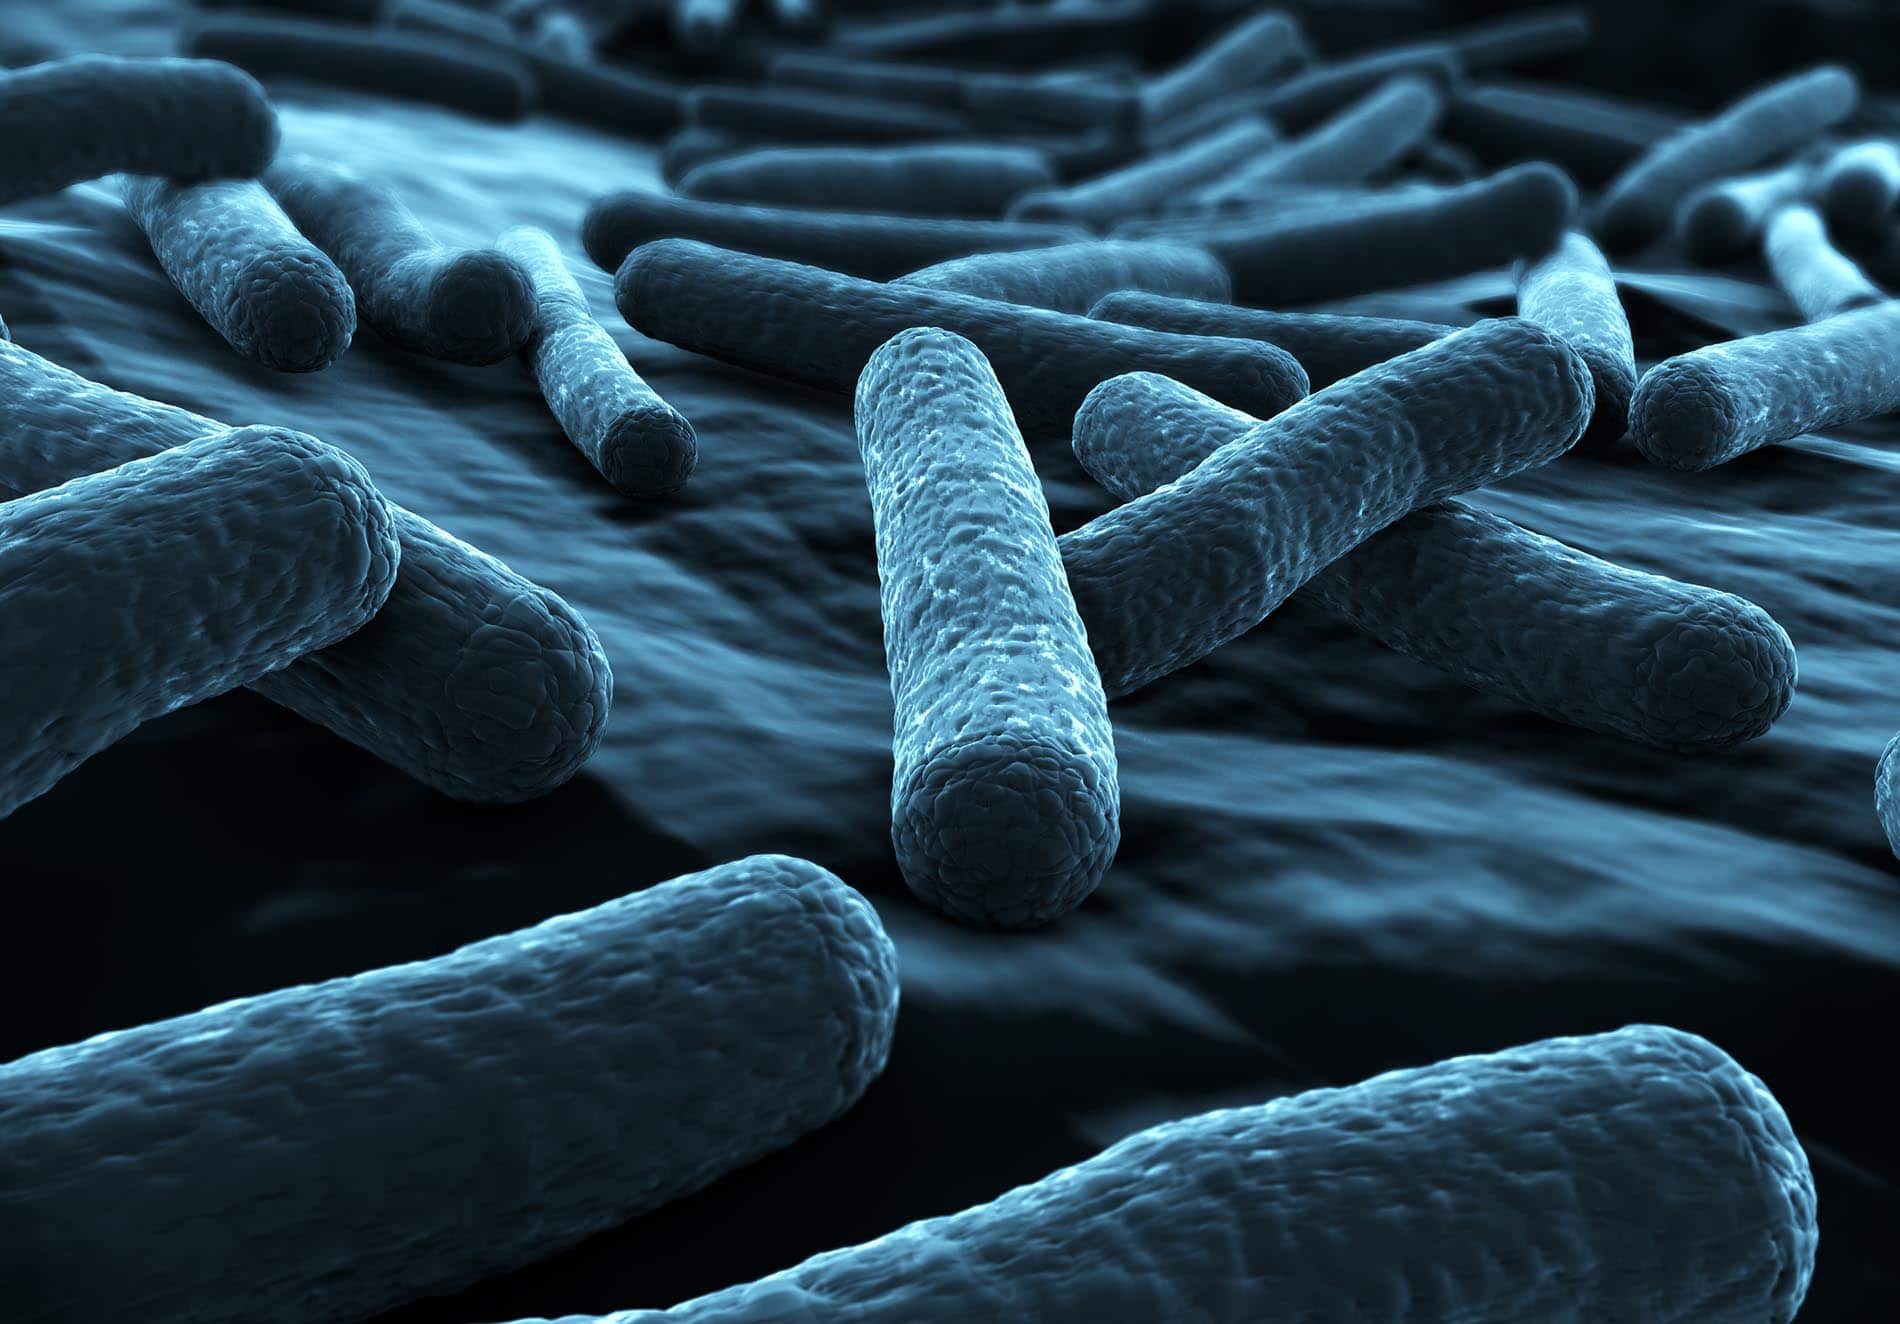 Les bactéries de la souche E. coli sont très souvent responsables de diarrhées pendant les vacances.